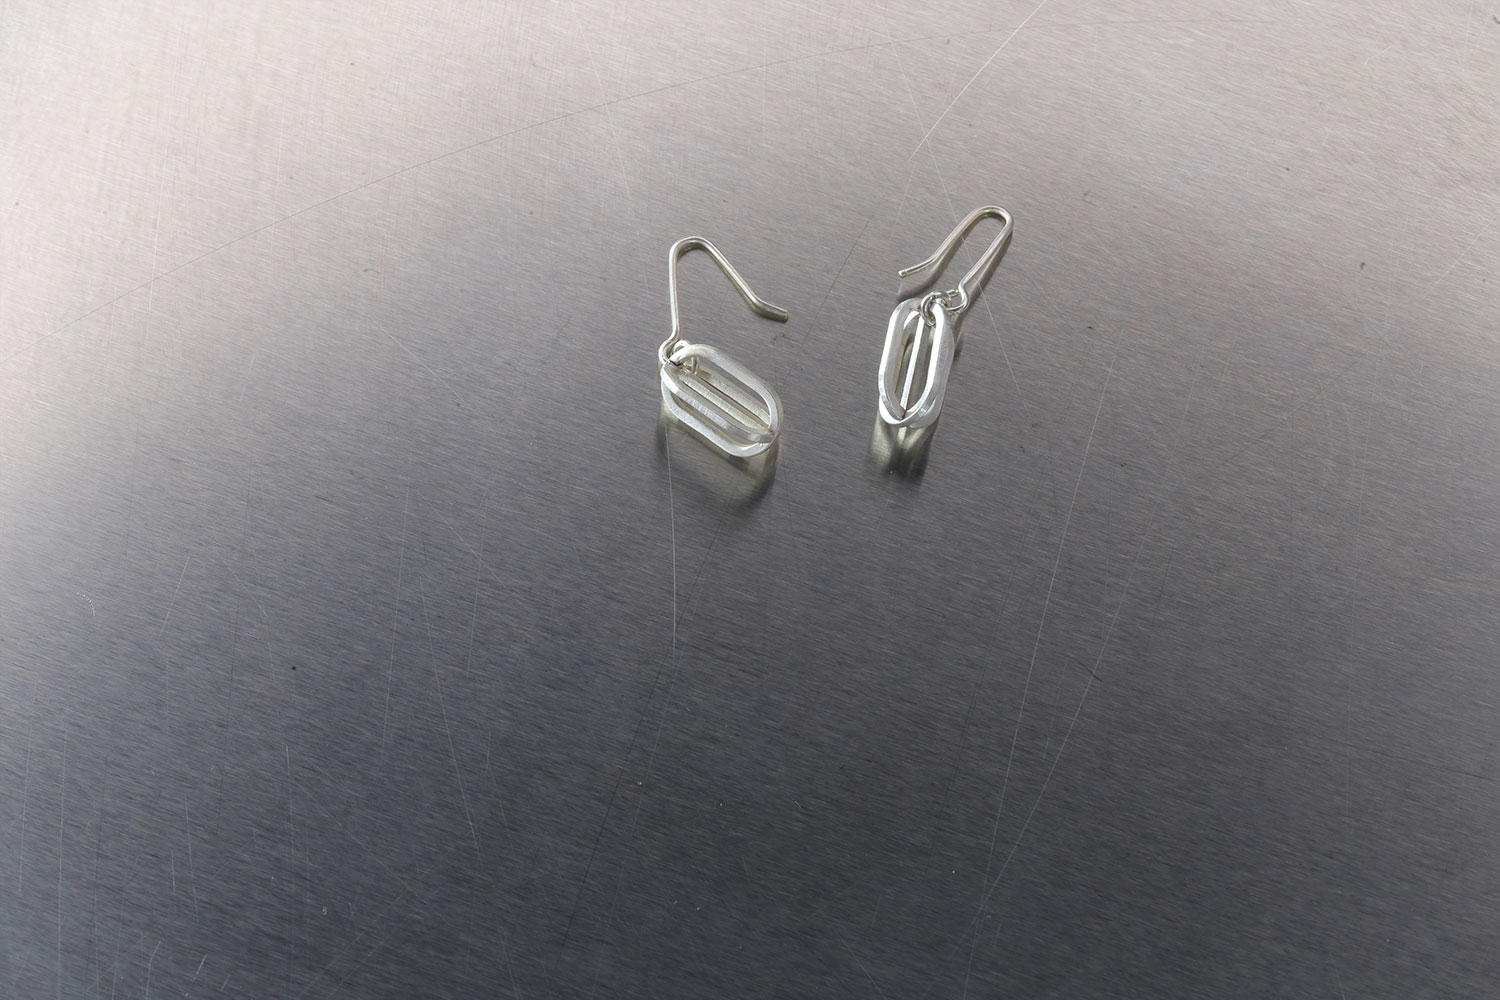 Golshan Small Silver Earrings